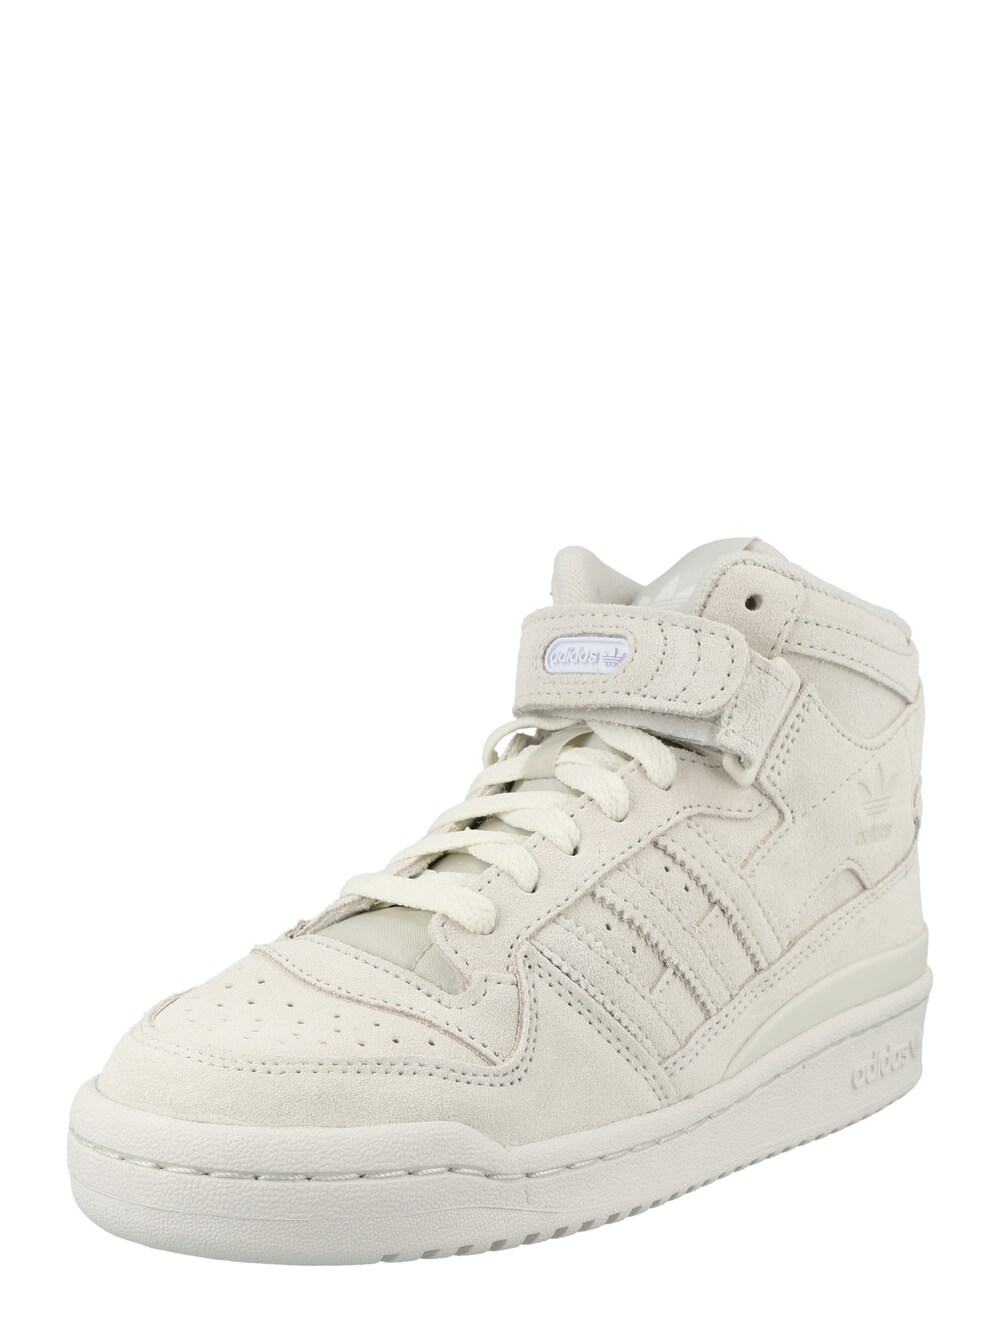 Высокие кроссовки Adidas Forum, светло-серый мужские кроссовки высокие adidas forum 84 hi белый серый